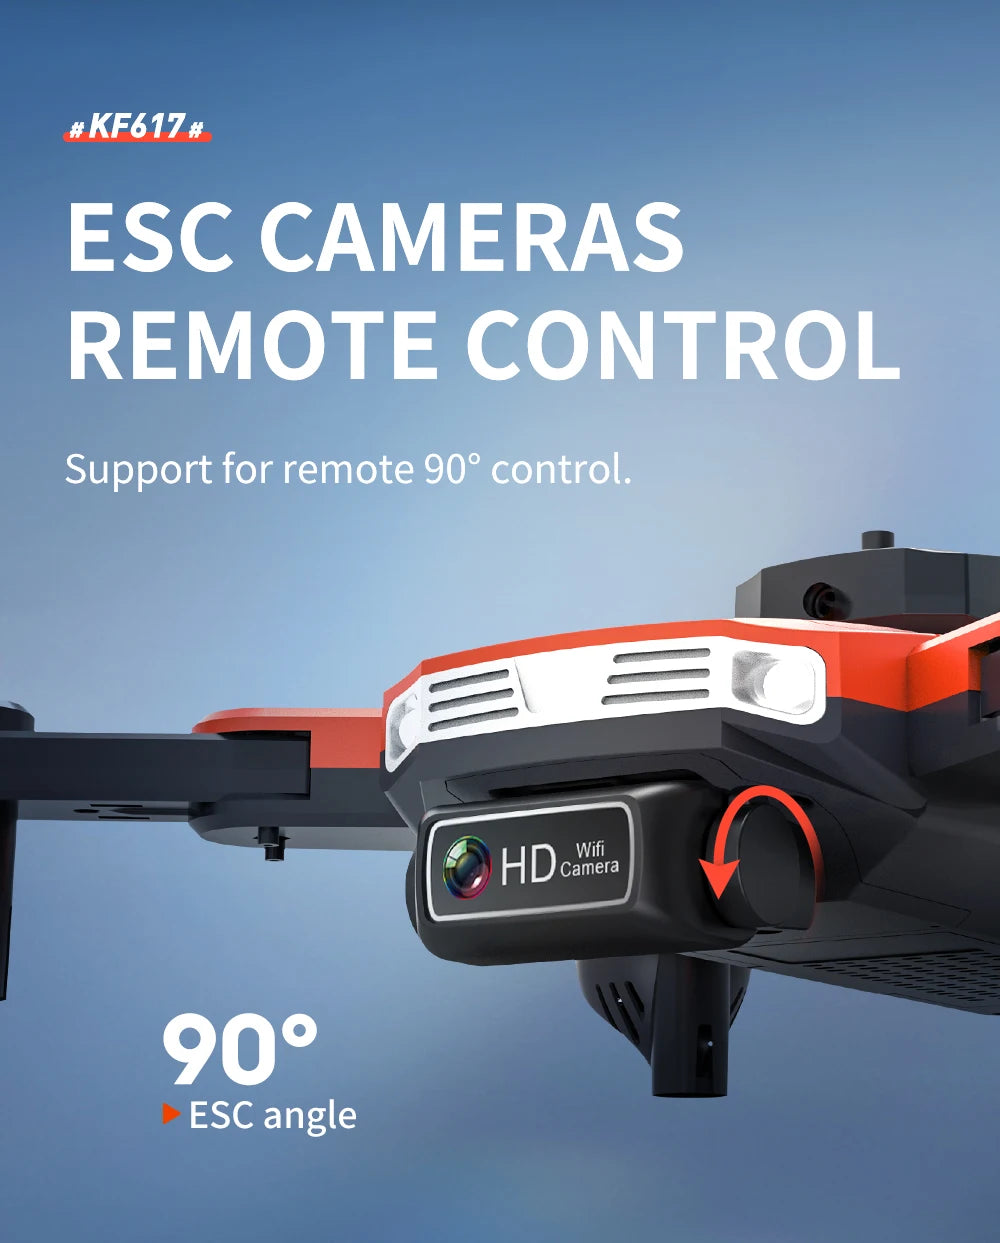 KF617 Pro Mini Drone, # kf617 # esc cameras remote control support for